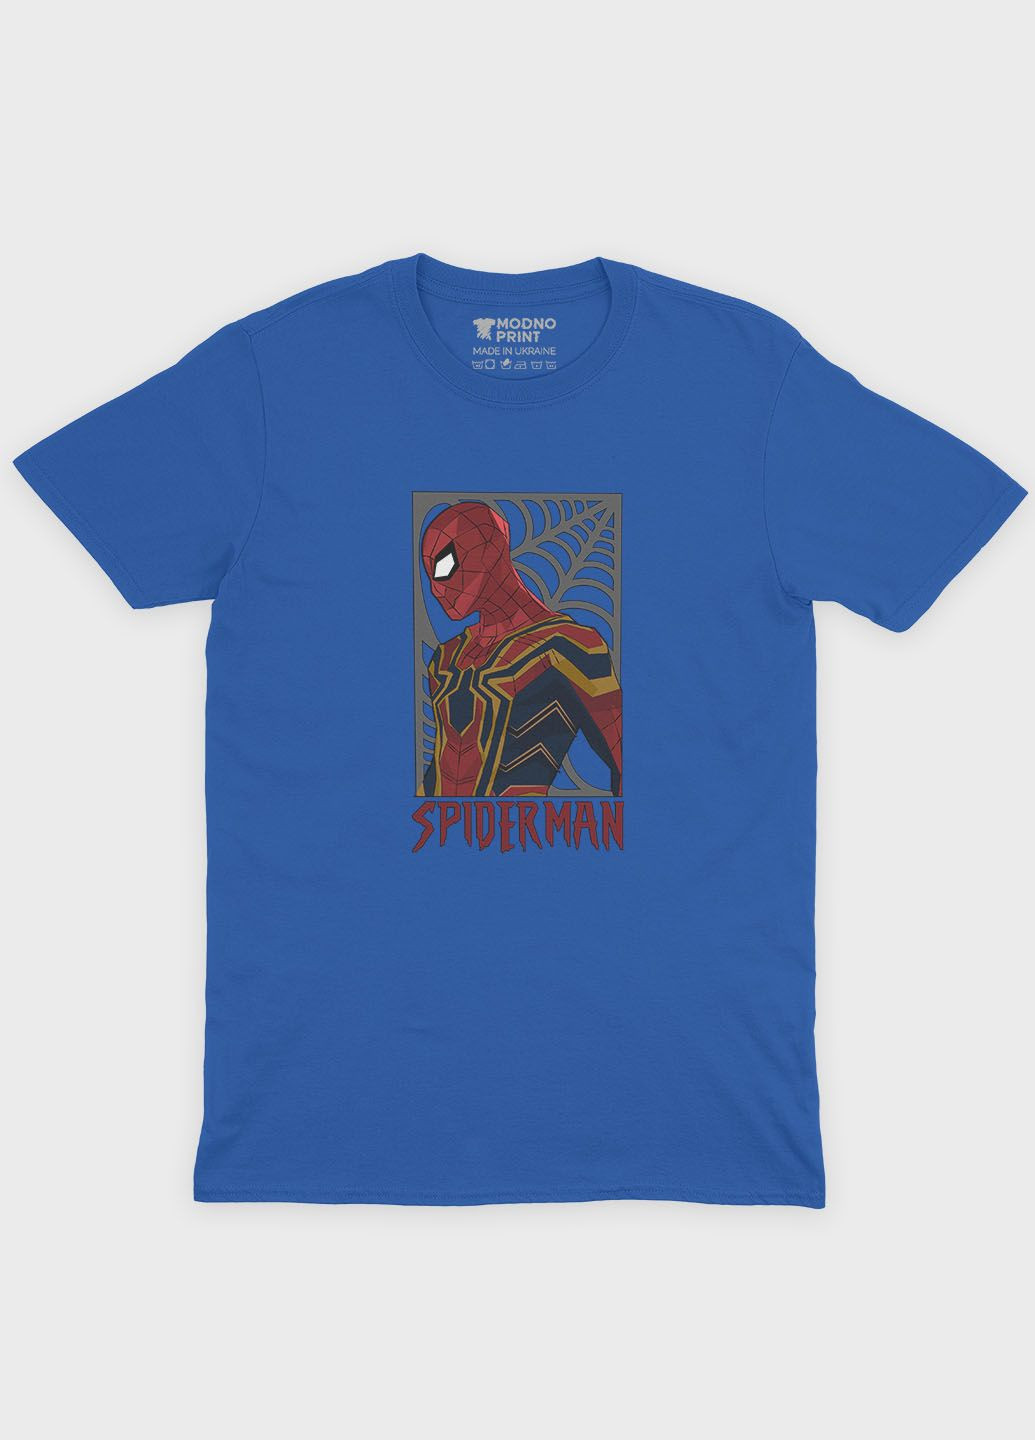 Синяя демисезонная футболка для девочки с принтом супергероя - человек-паук (ts001-1-grr-006-014-048-g) Modno